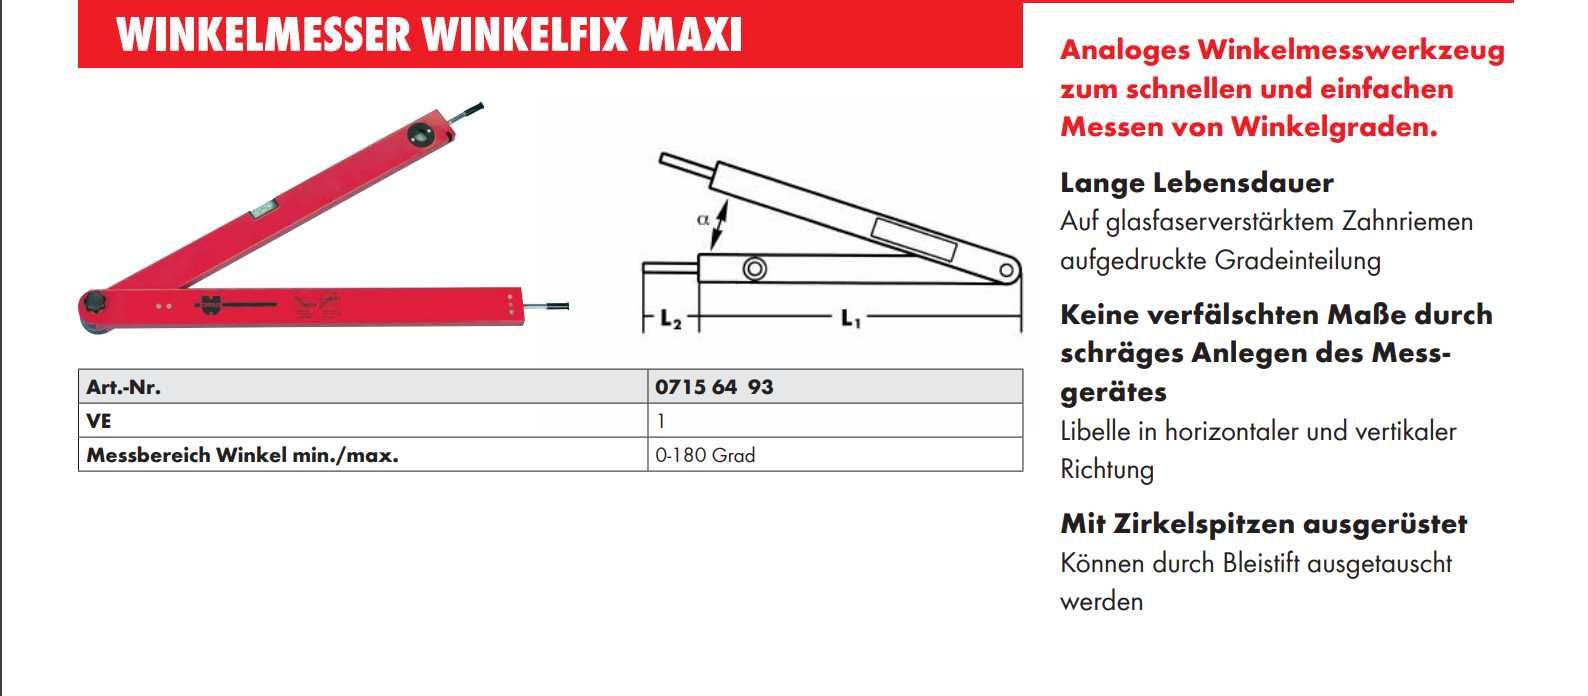 Транспортир Winkelfix mini
WNKLMESS-ALG-WINKELFIX-L430MMWürth-L430MM